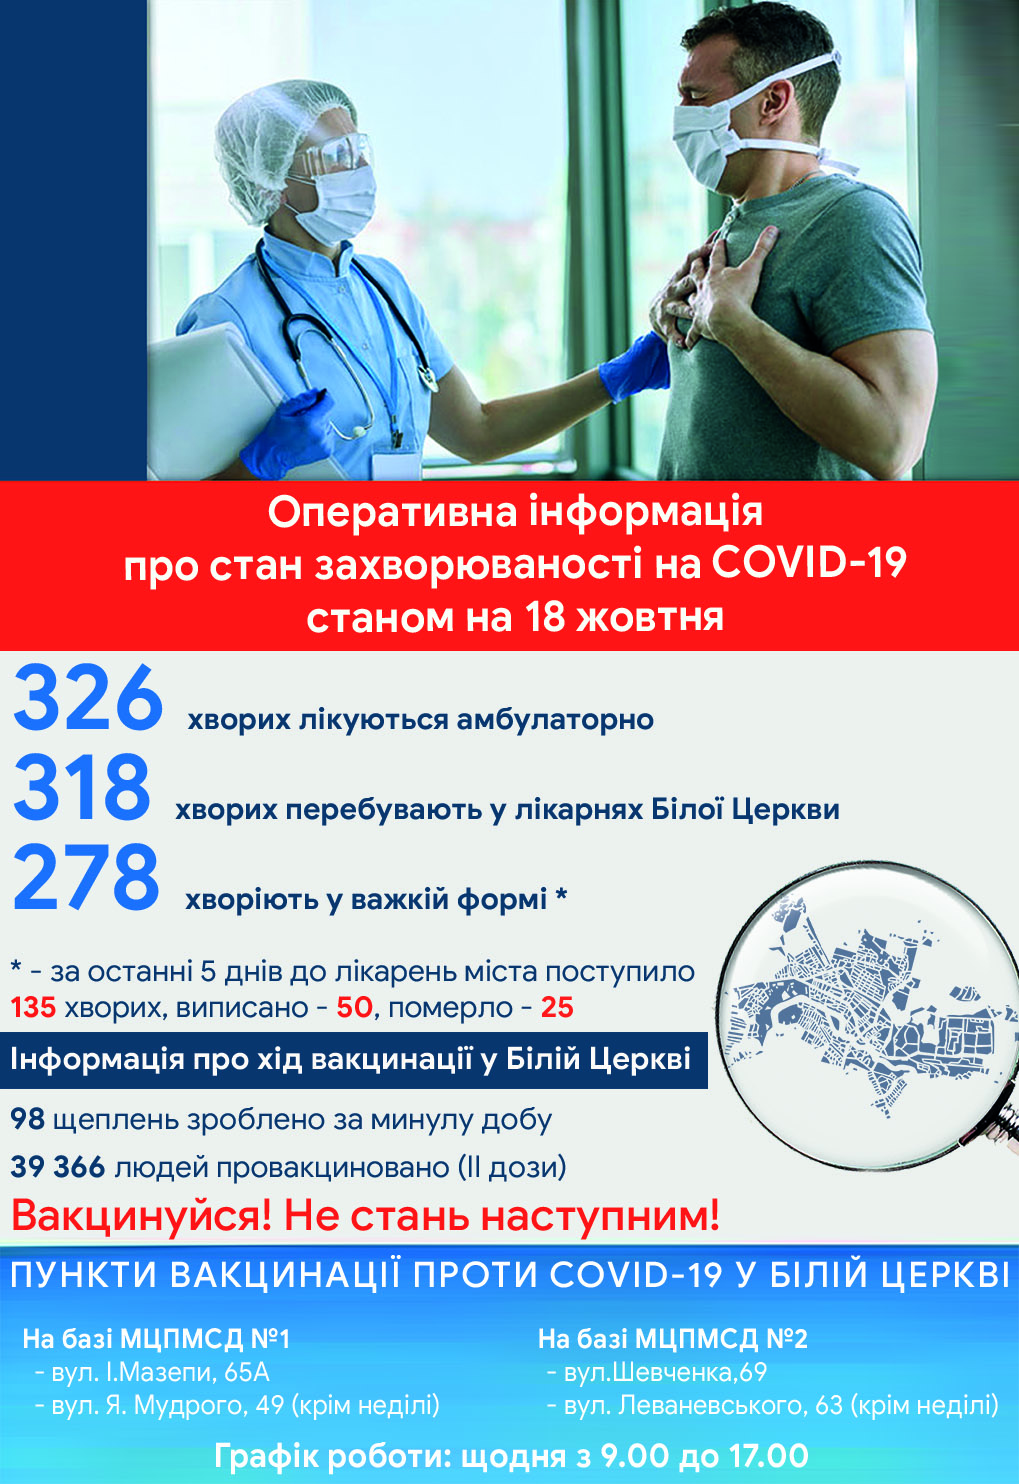 Оперативна інформація про стан захворюваності на COVID-19 станом на 18 жовтня